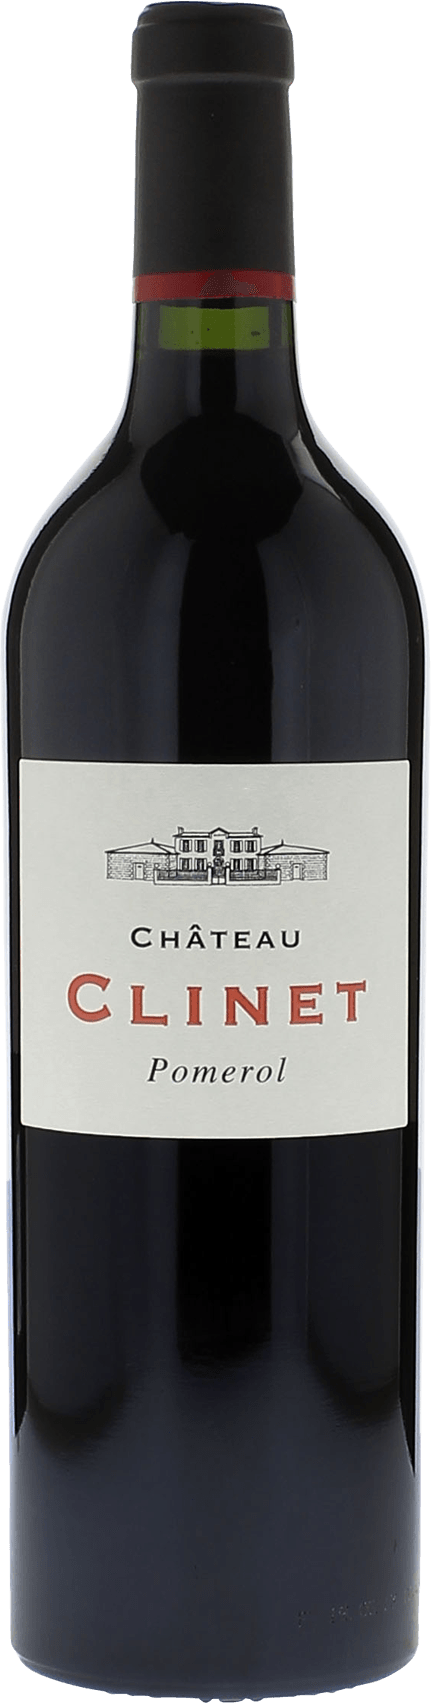 Clinet 2007  Pomerol, Bordeaux rouge